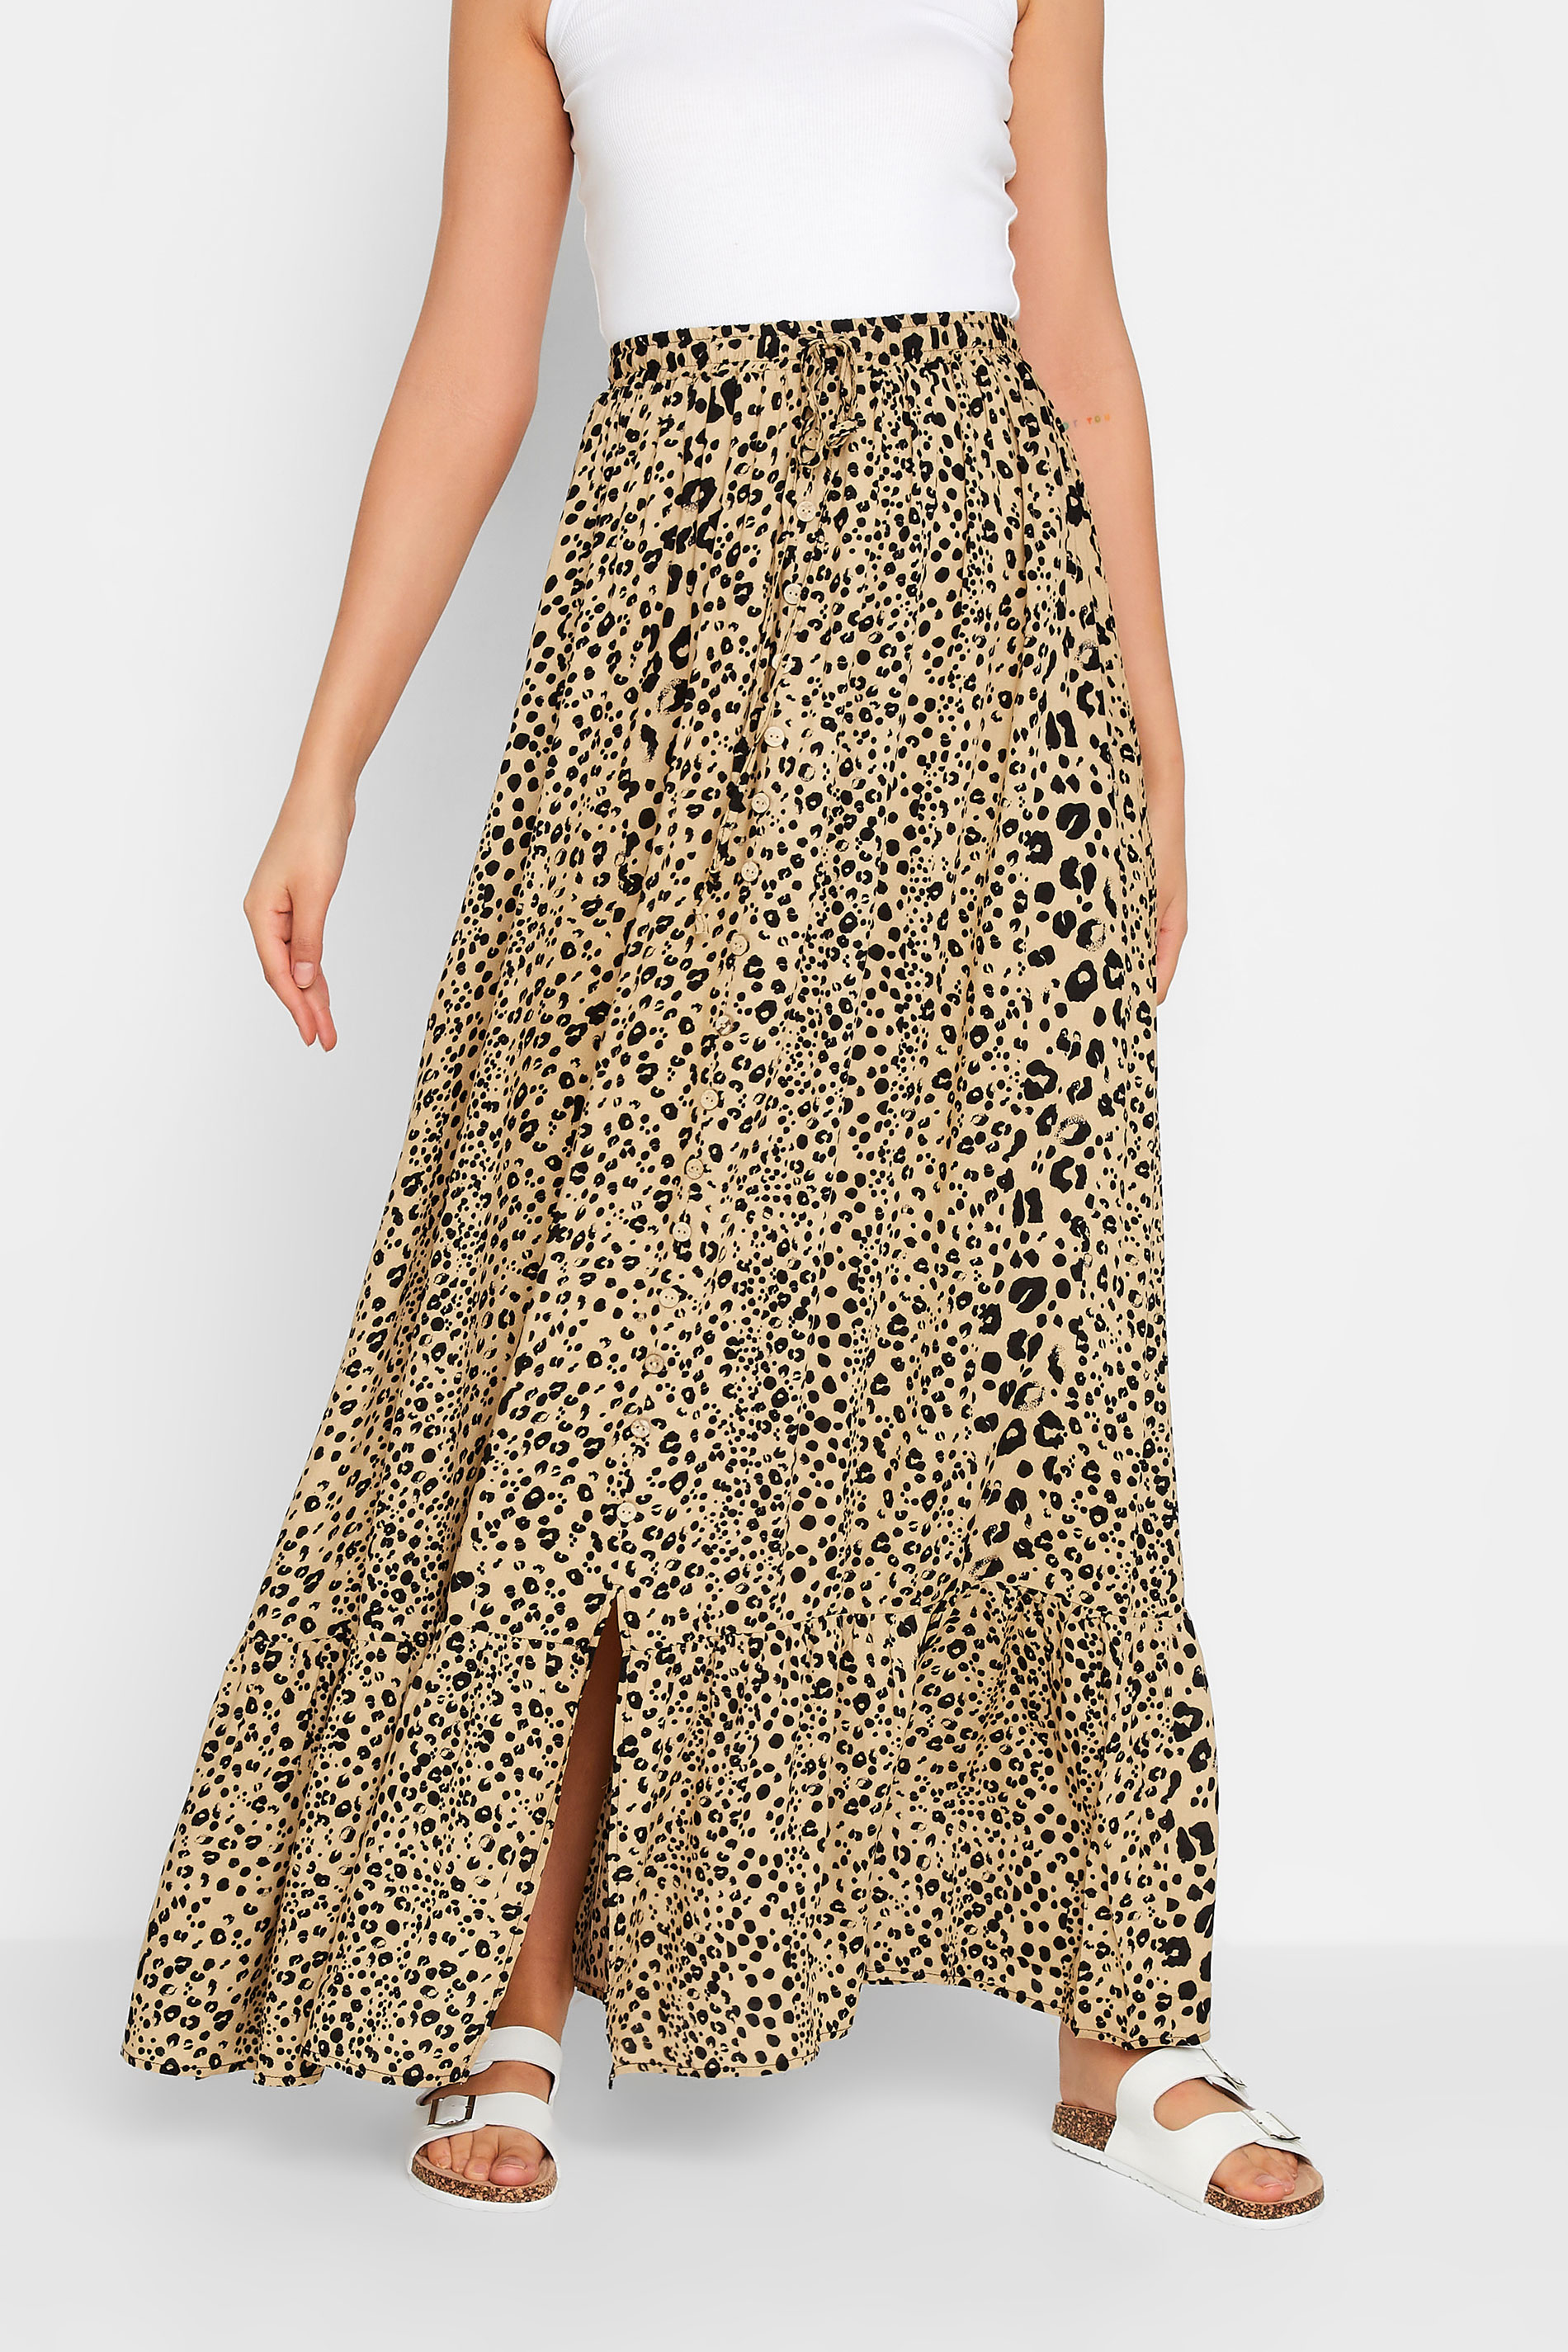 LTS Tall Women's Natural Brown Leopard Print Maxi Skirt | Long Tall Sally 1